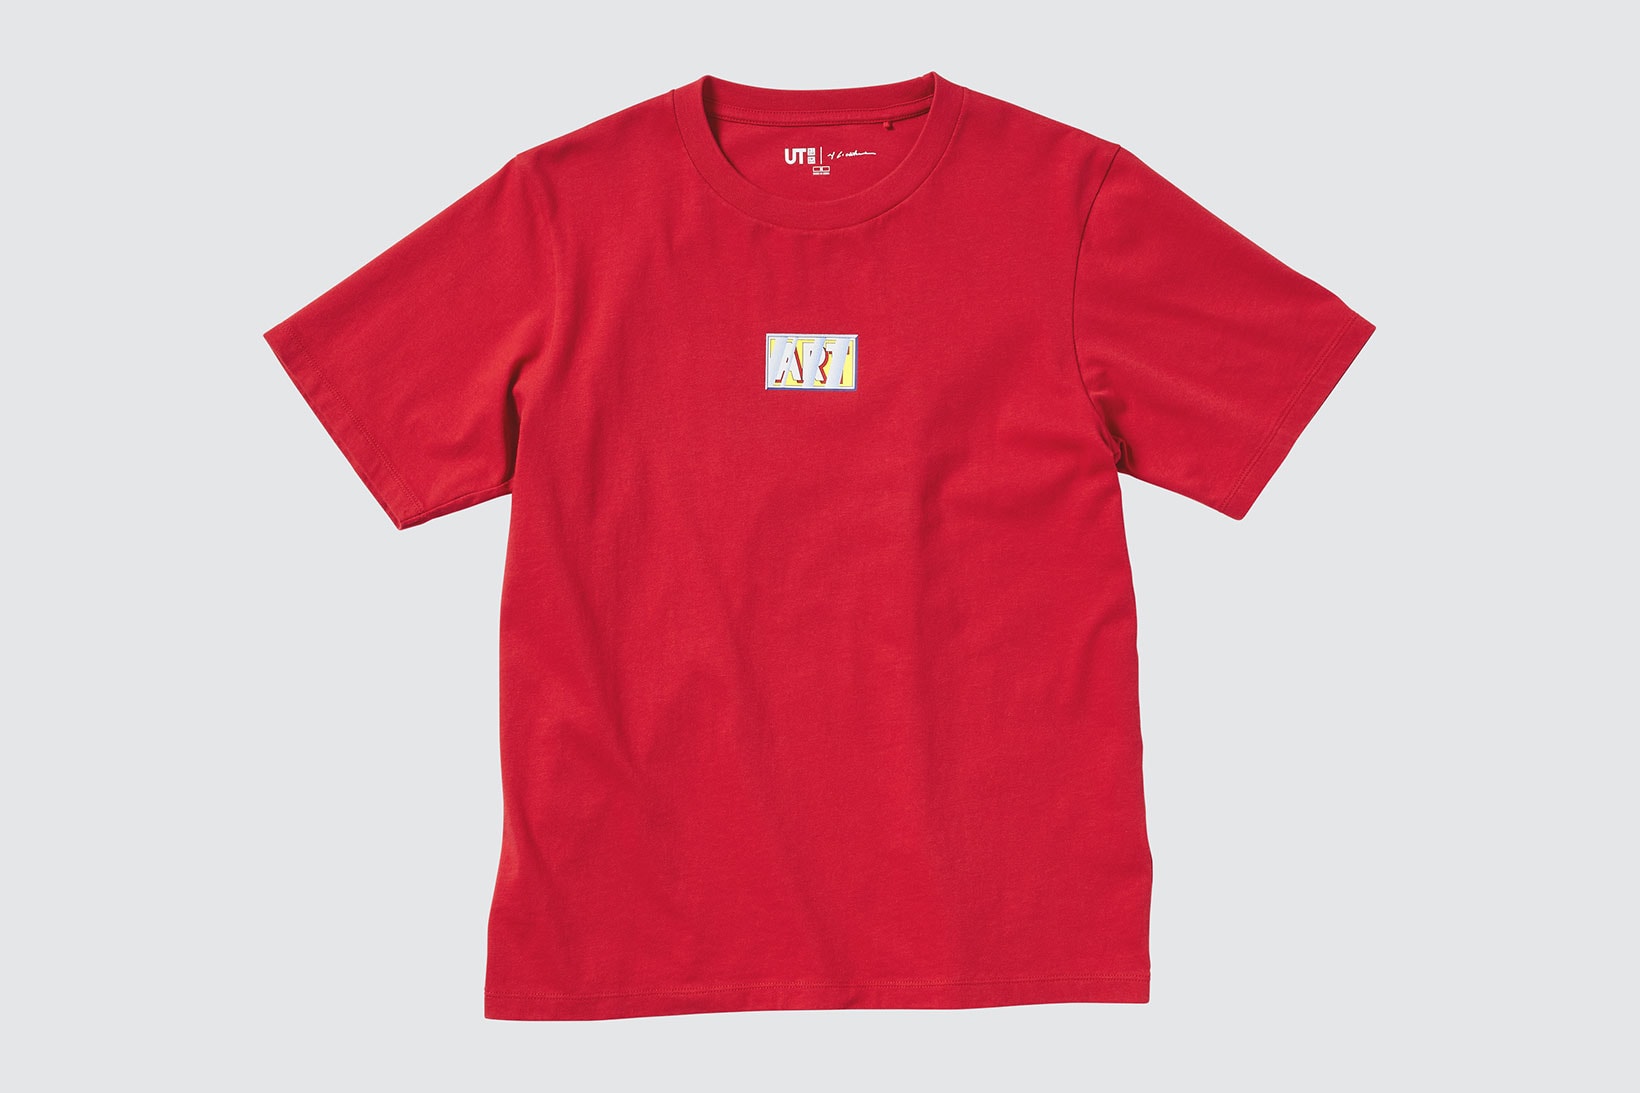 uniqlo ut roy lichtenstein american pop art collaboration t-shirts red tee